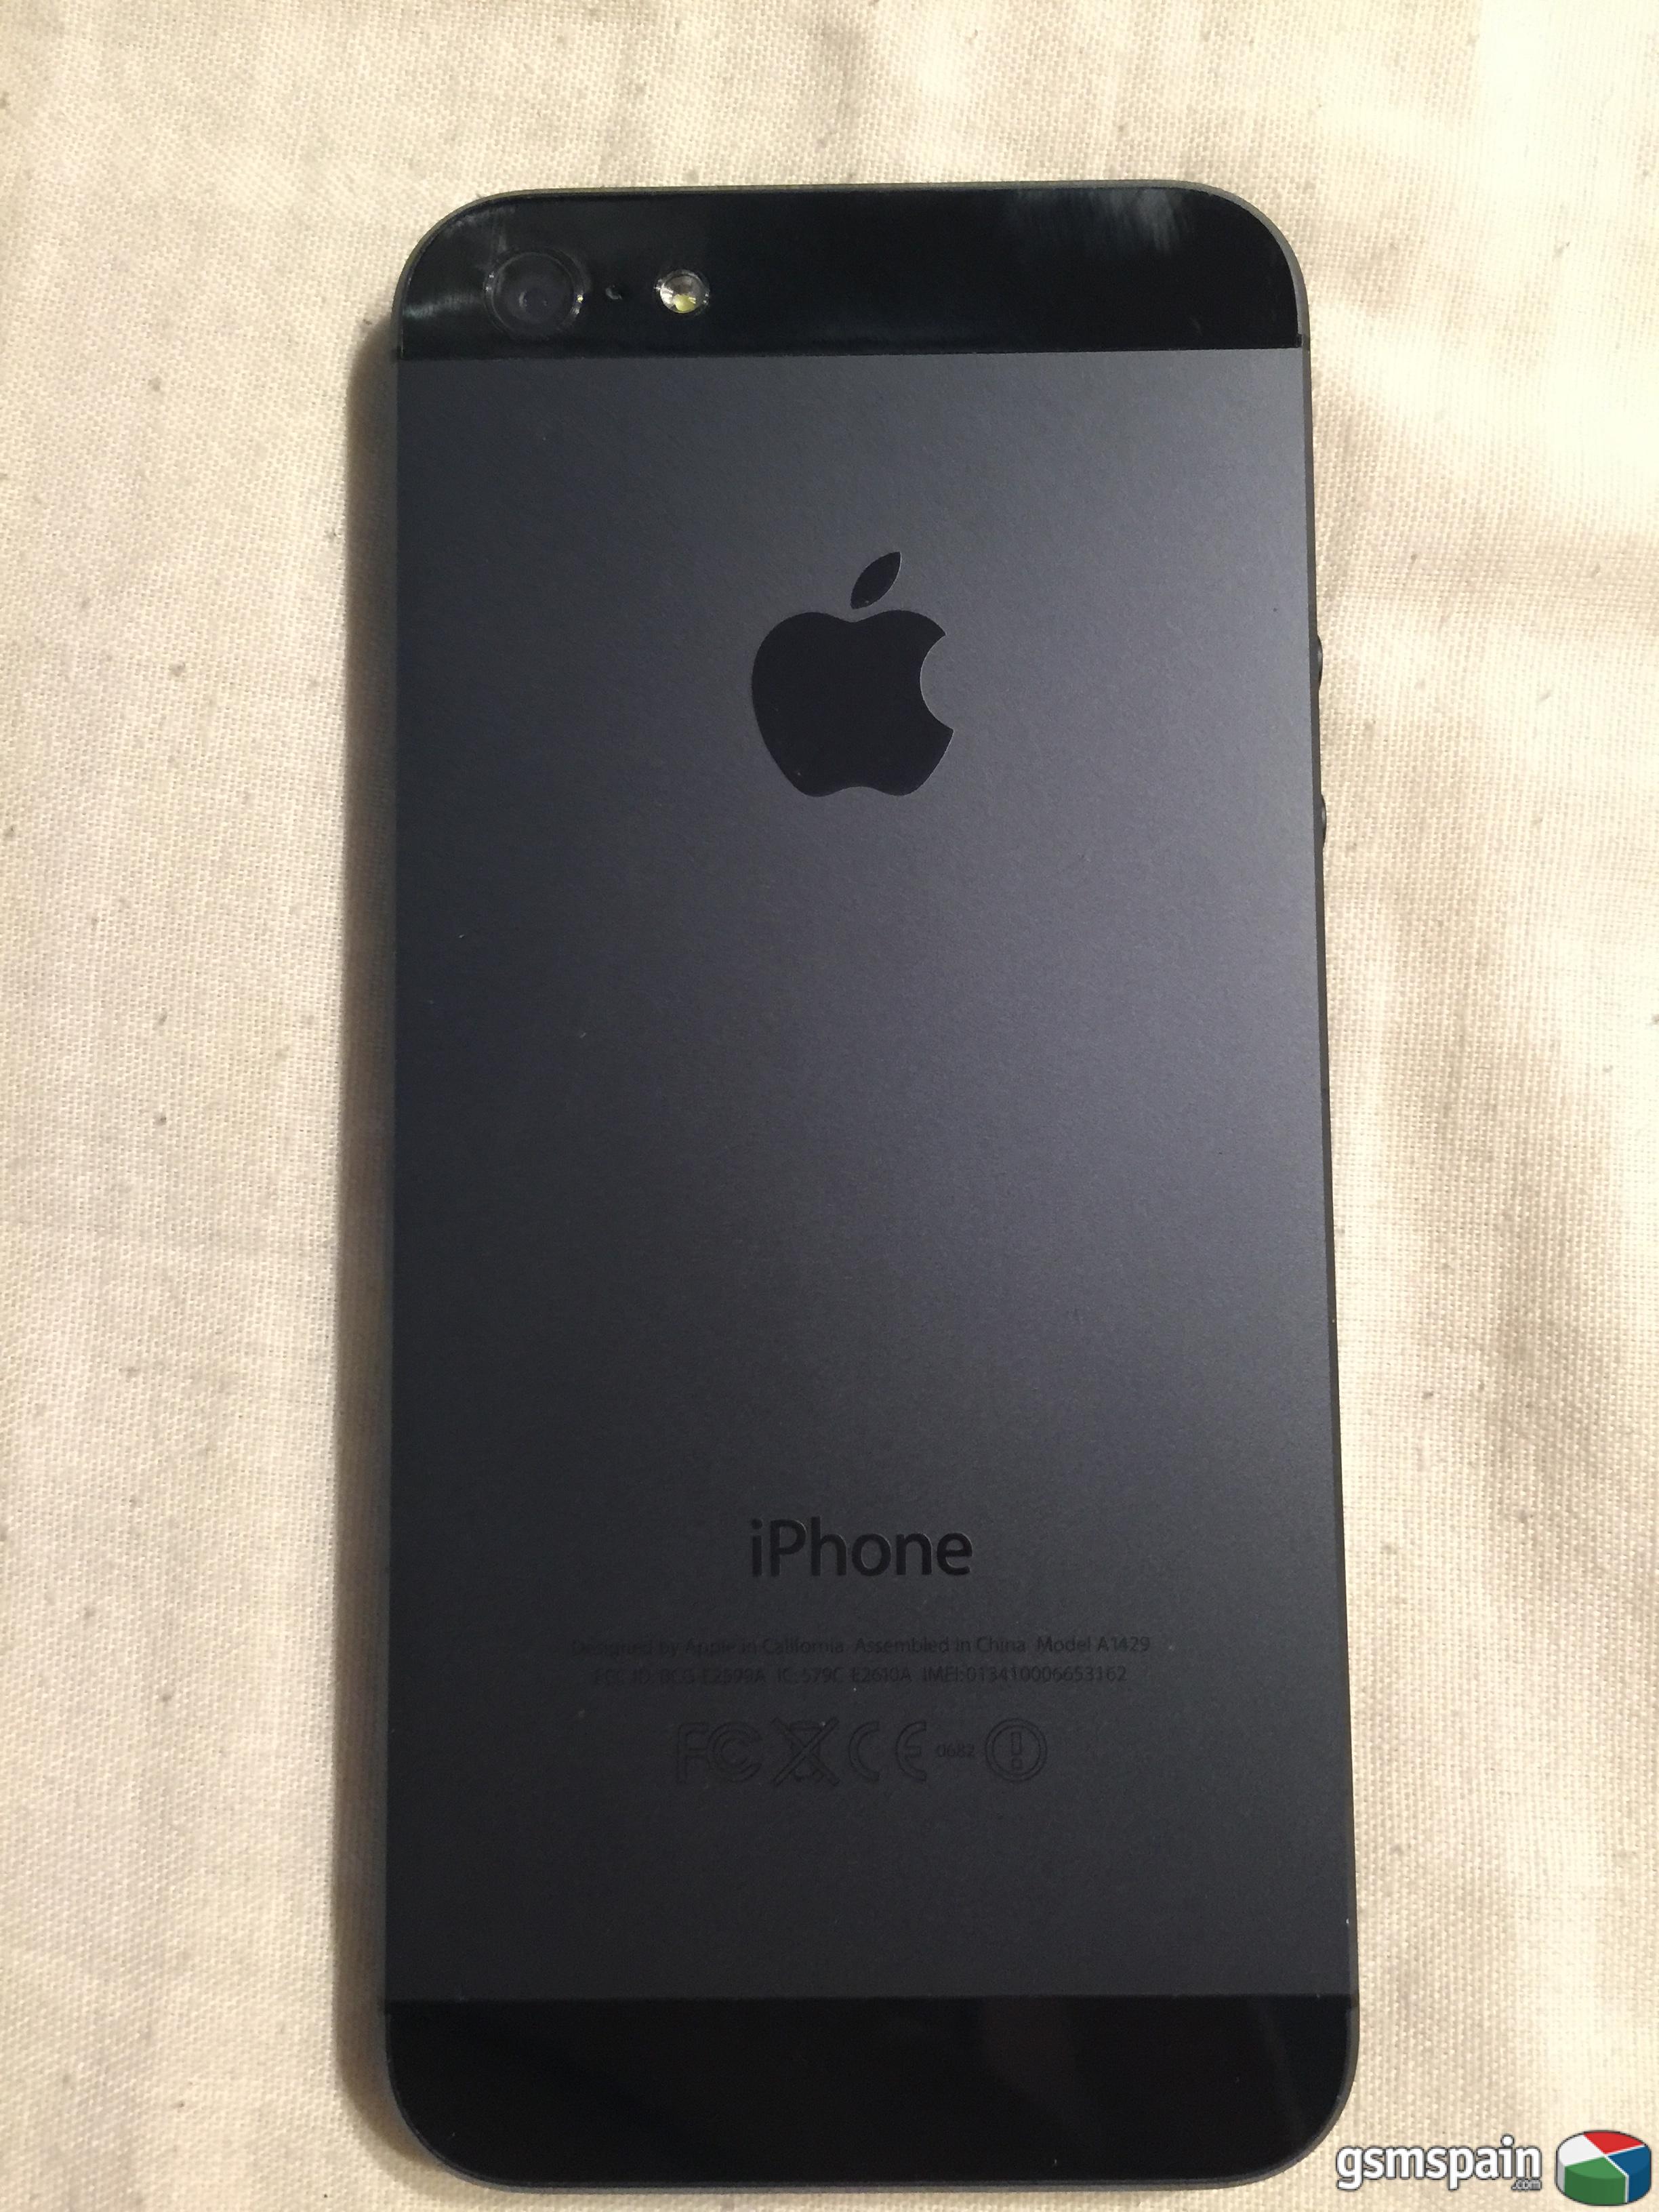 [VENDO] iPhone 5 Negro 16Gb libre, barato